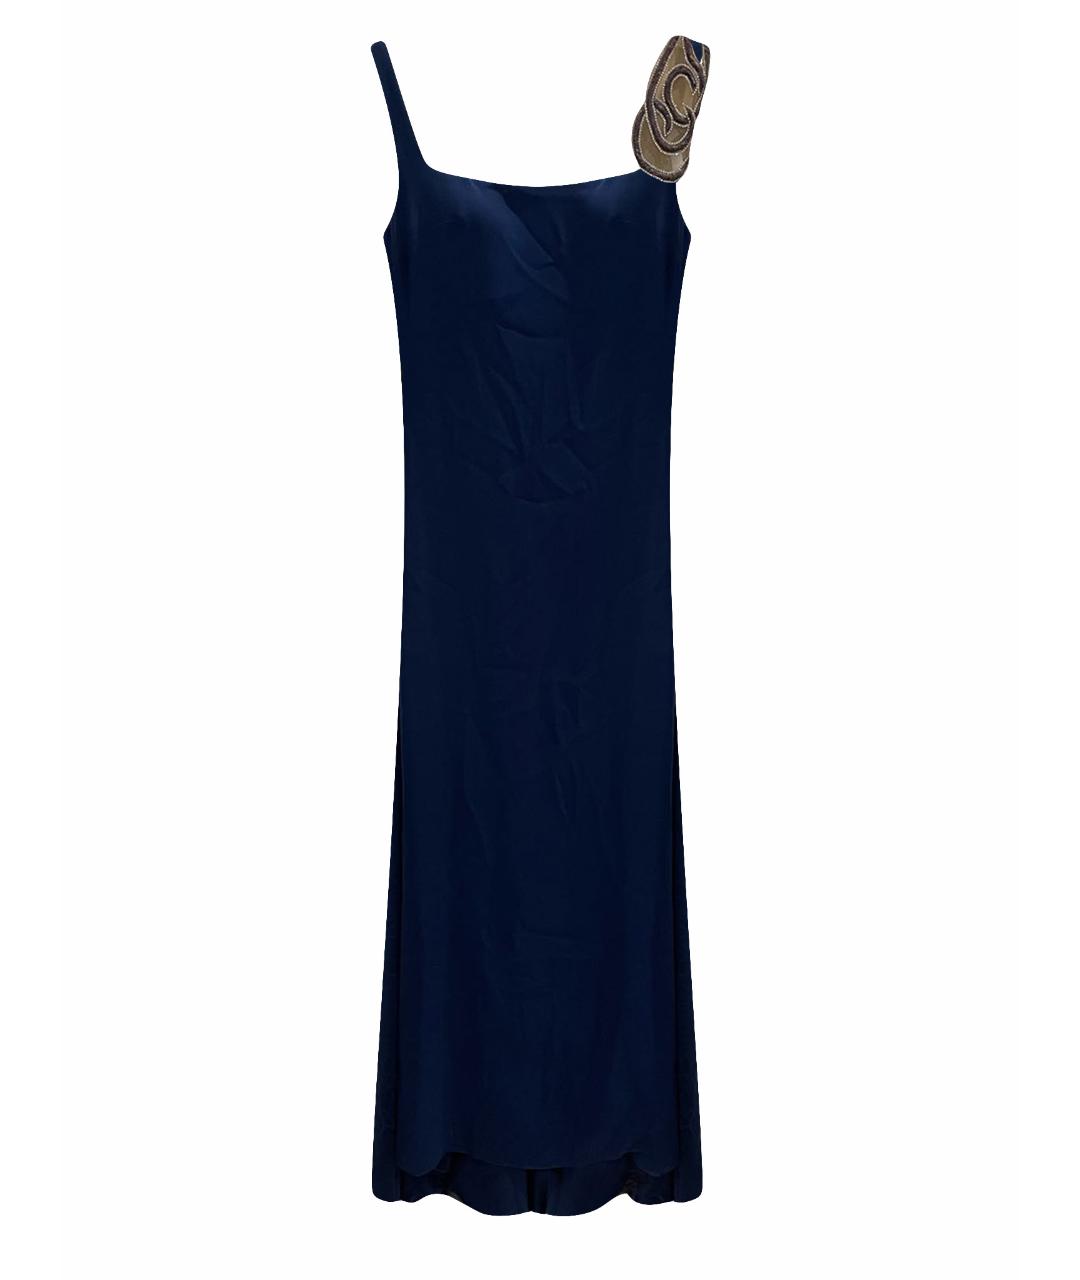 TARIK EDIZ Синее вечернее платье, фото 1